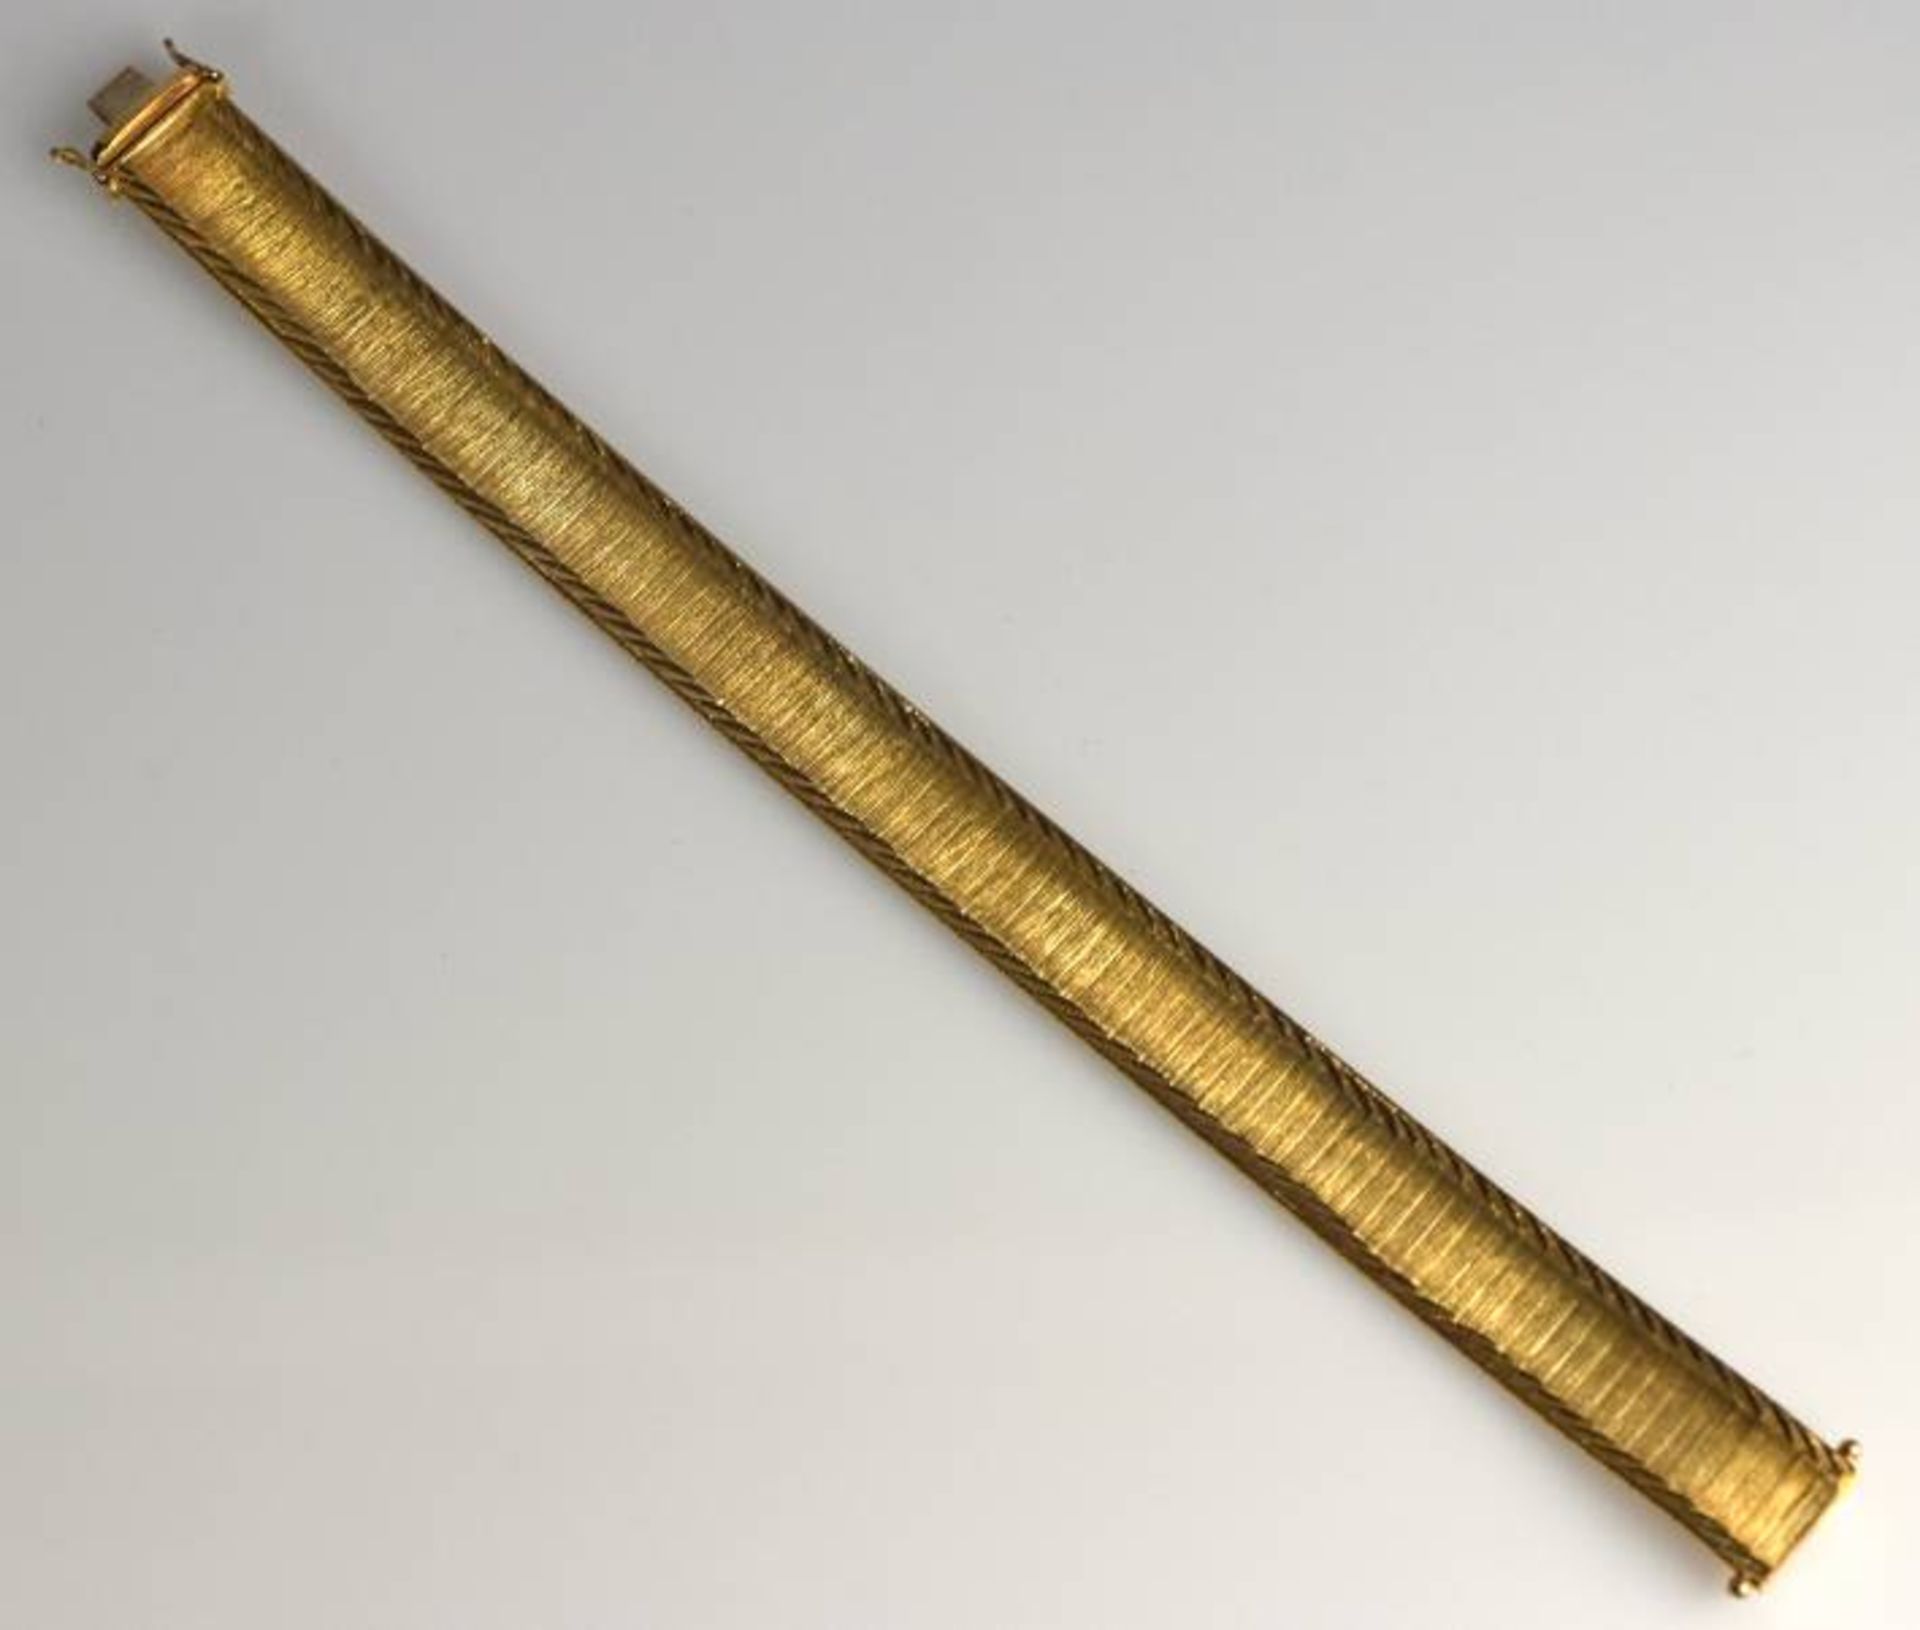 ARMBAND mit polierten Rändern, Steckverschluß, Sicherheitsachten, Gold 8ct, 27,7g, L 19cm - Bild 3 aus 5